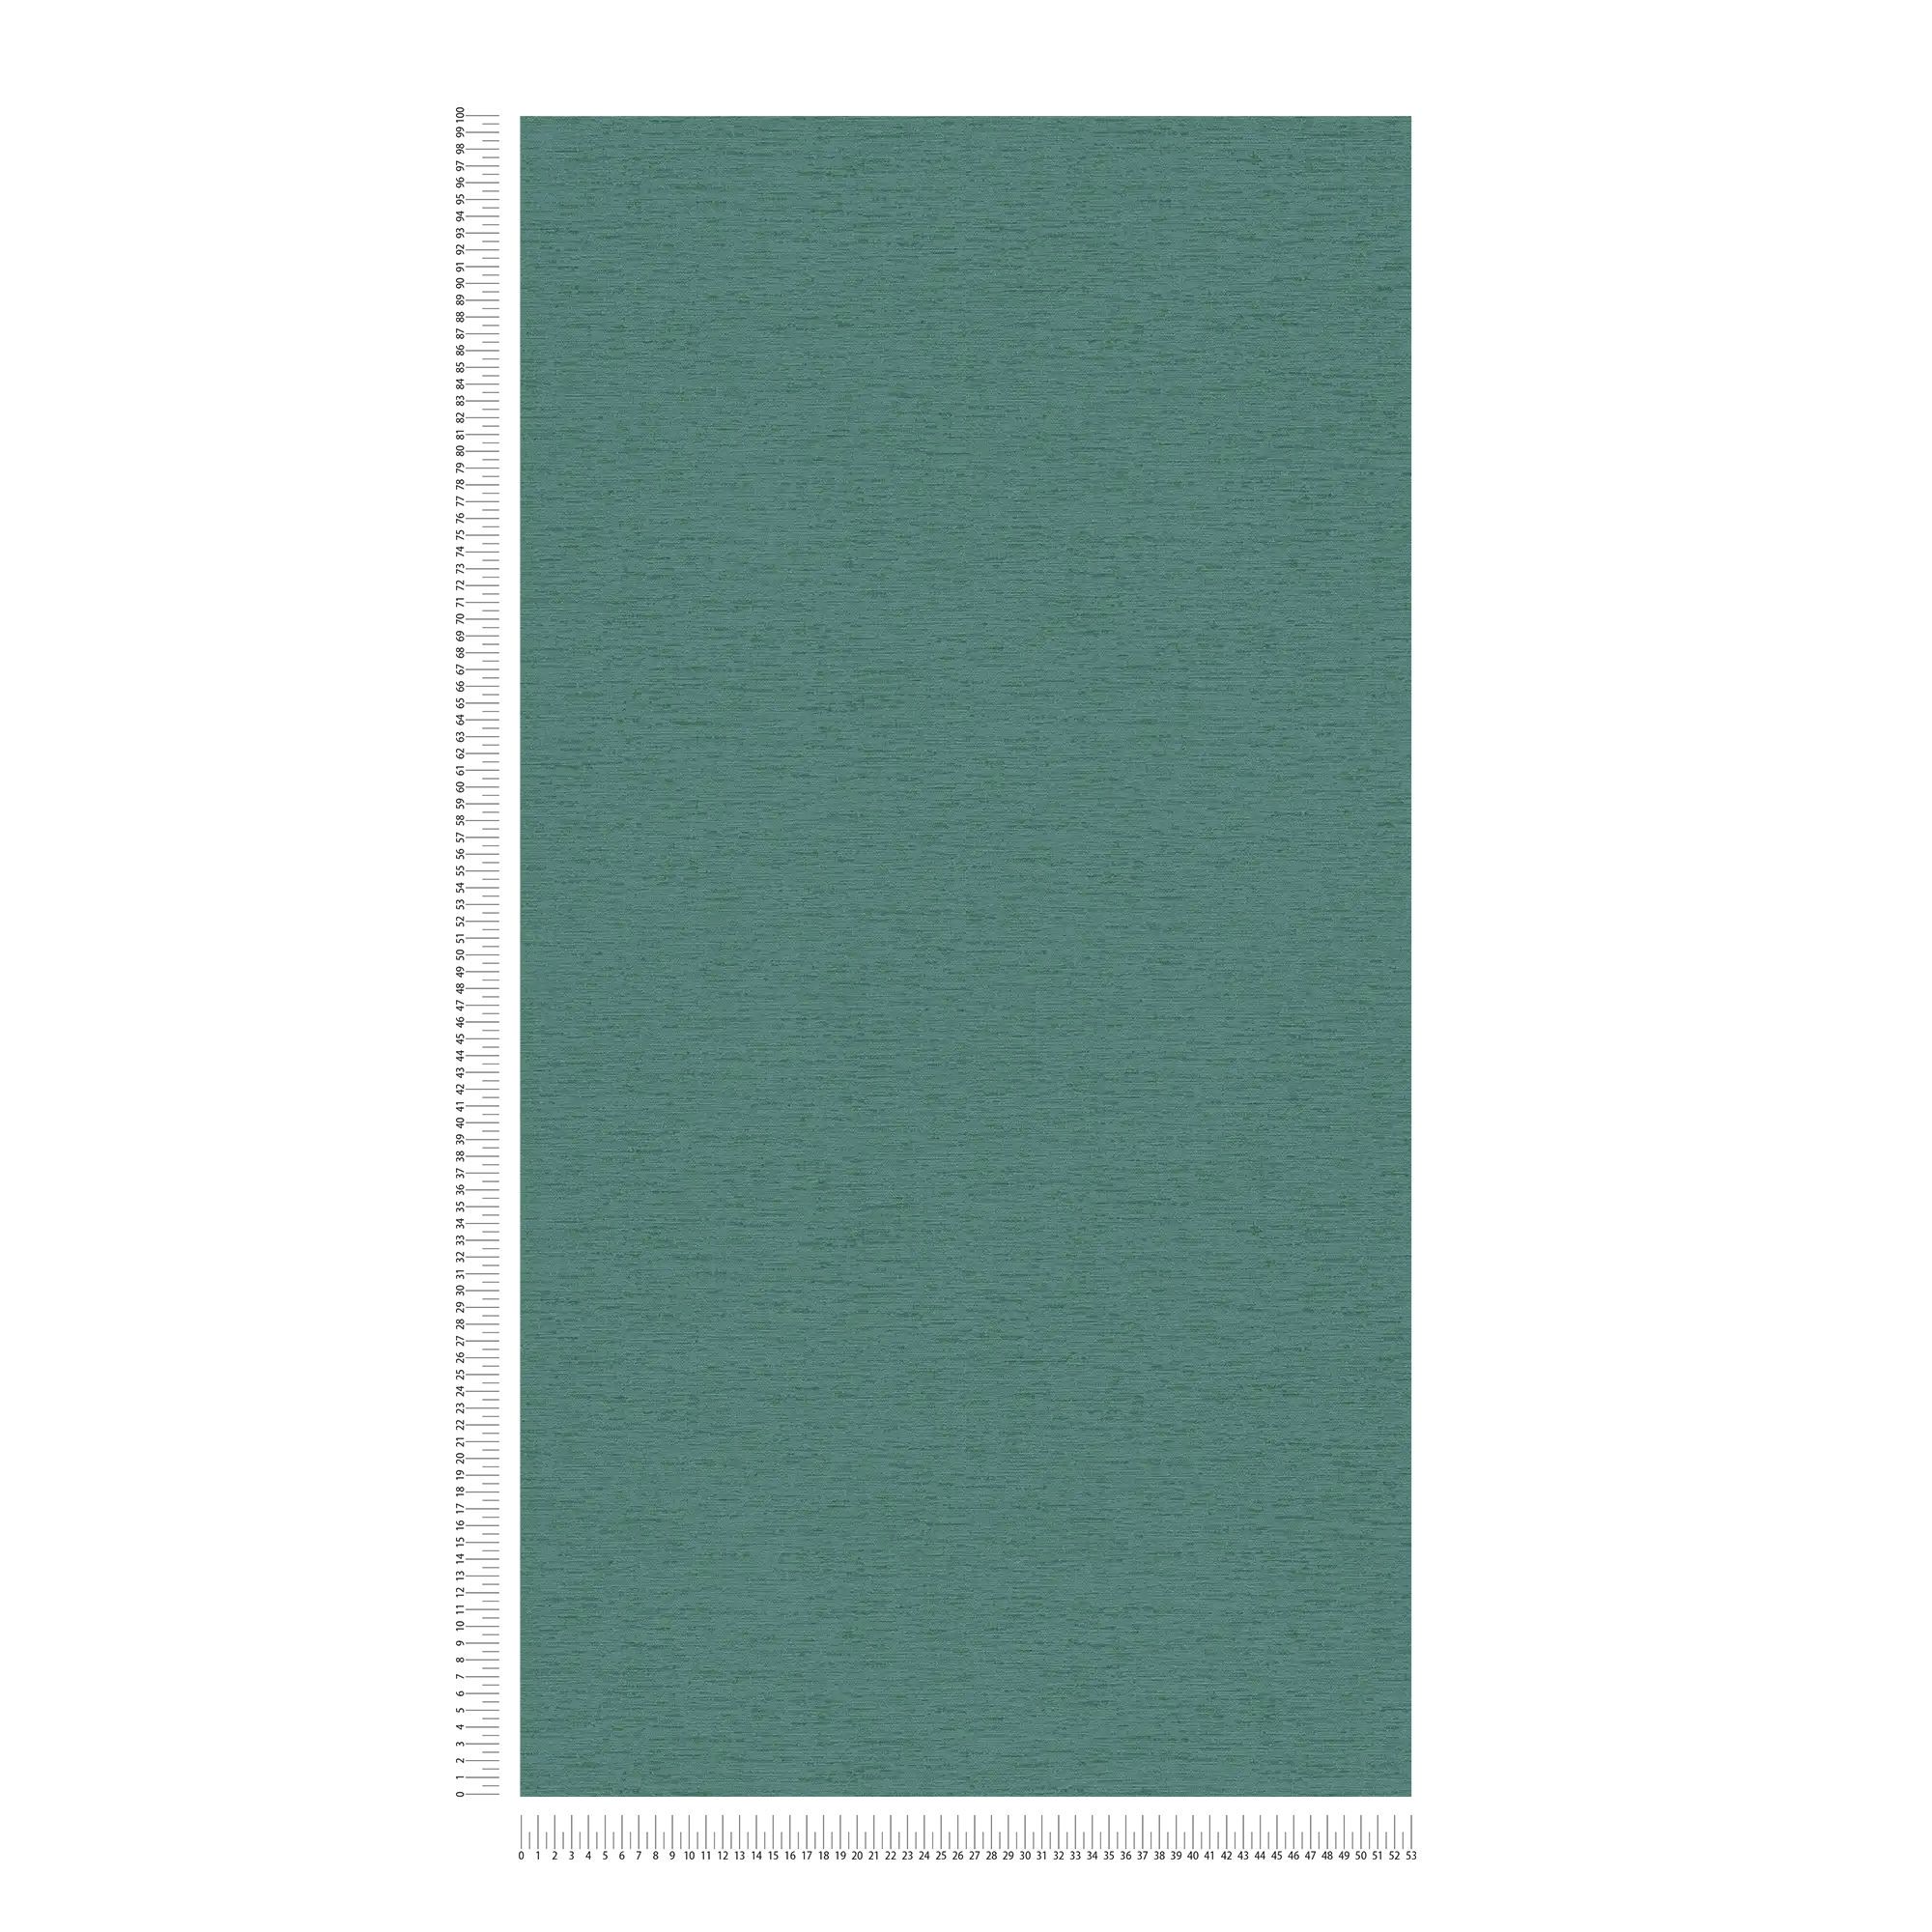             Einfarbige Vliestapete mit Gewebestruktur, matt – Petrol, Grün
        